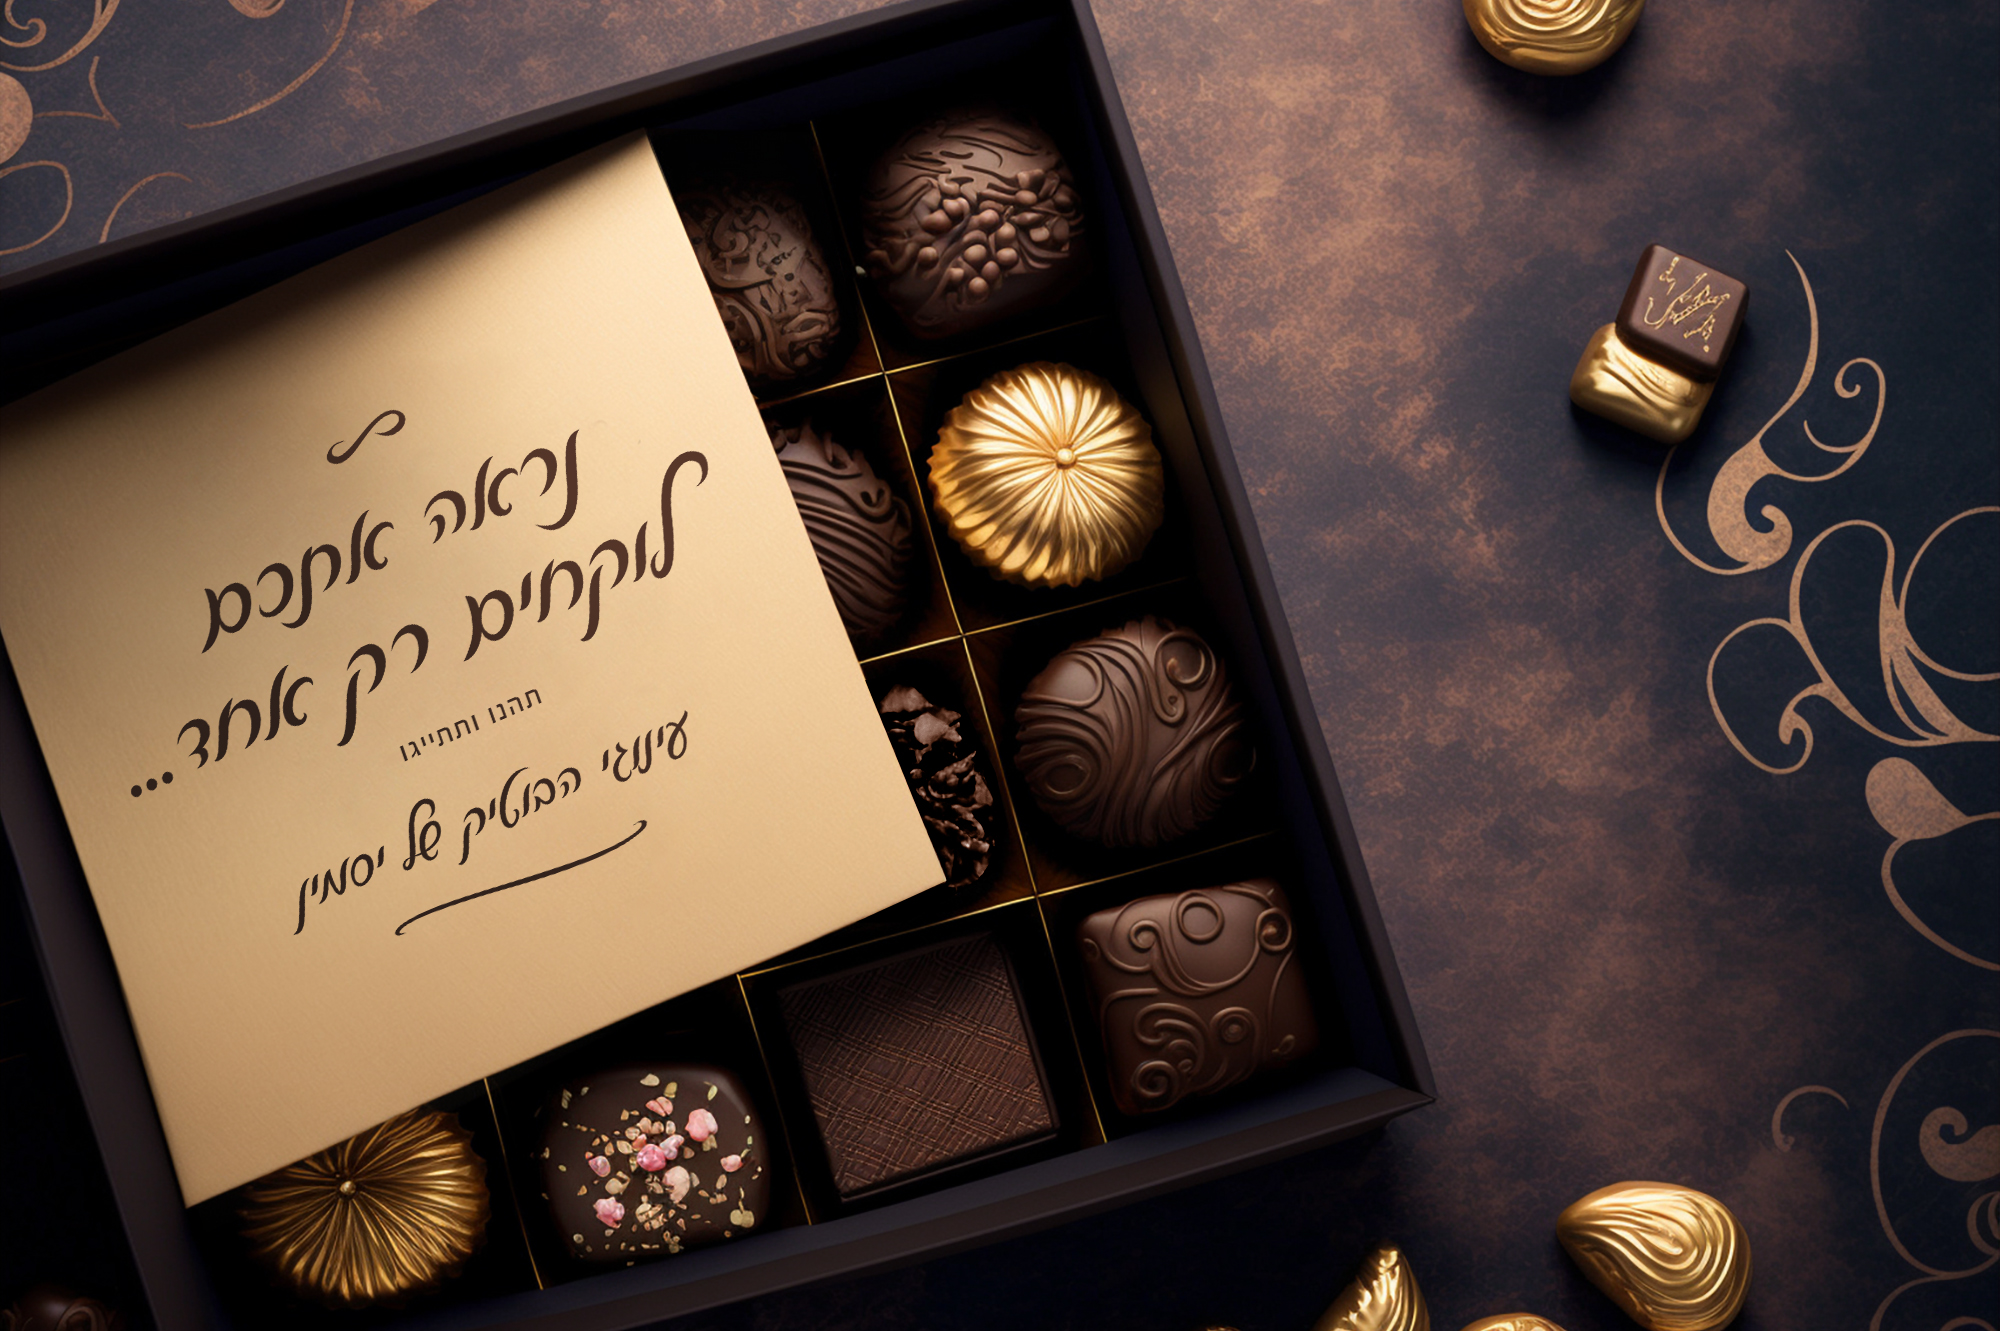 אריזת שוקולד מתוקים עם פונט לואיז - כתב יד יפה בעברית